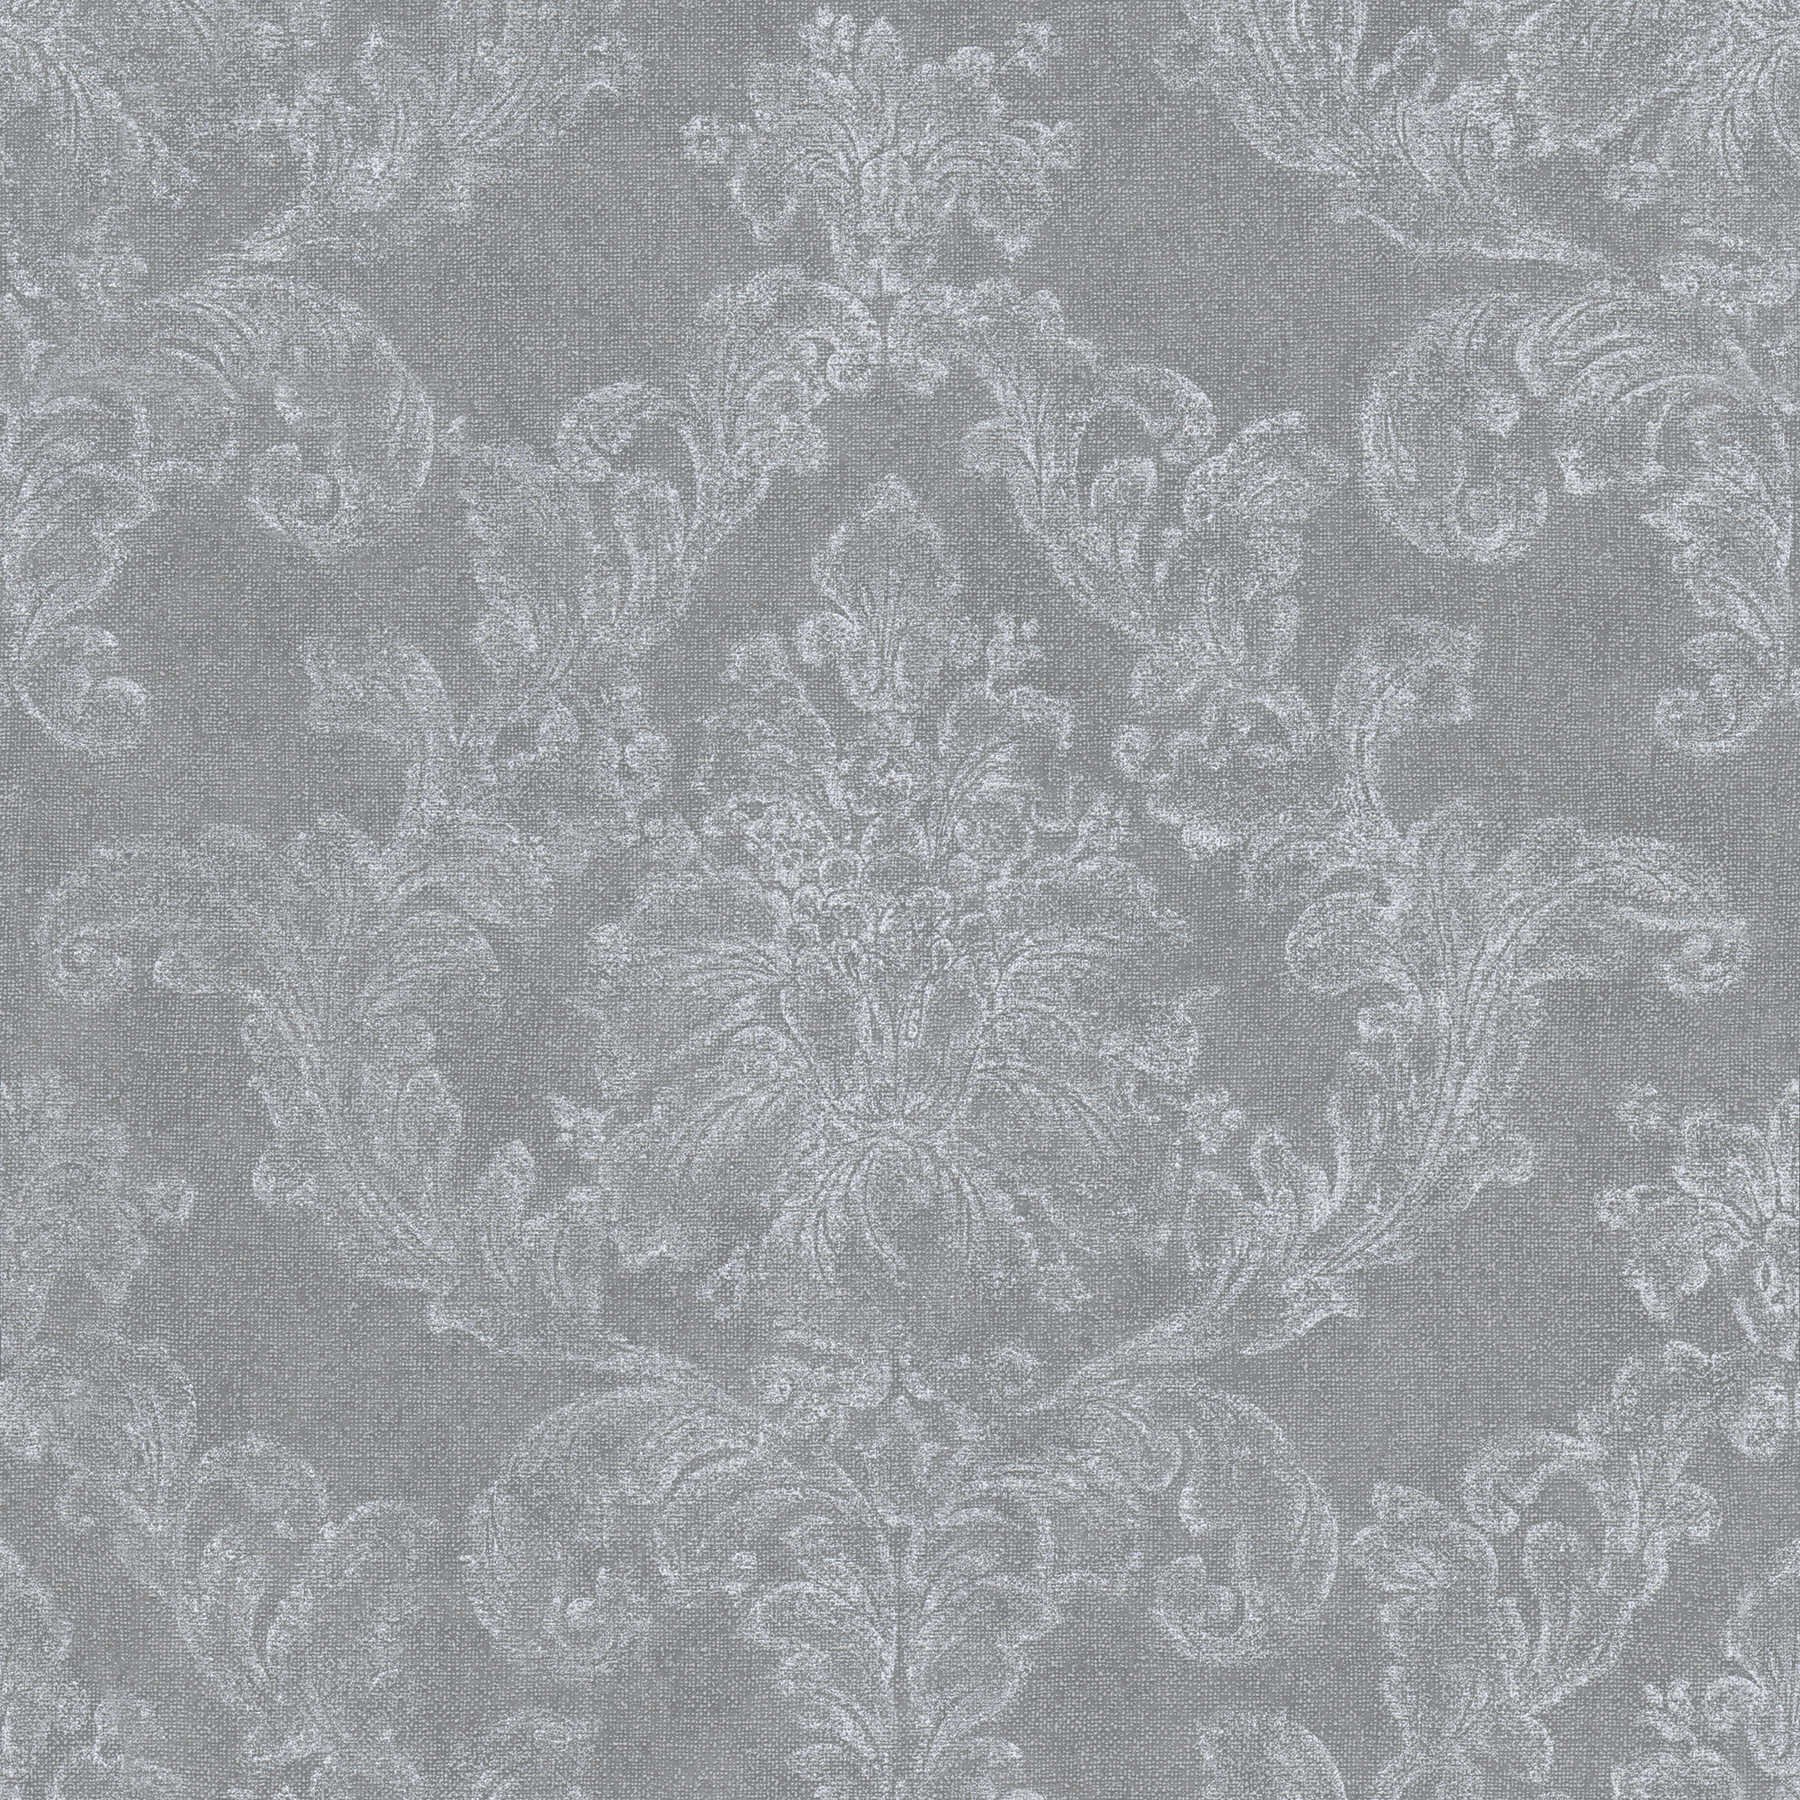 Papel pintado ornamental de estilo rústico con aspecto textil - gris, blanco
